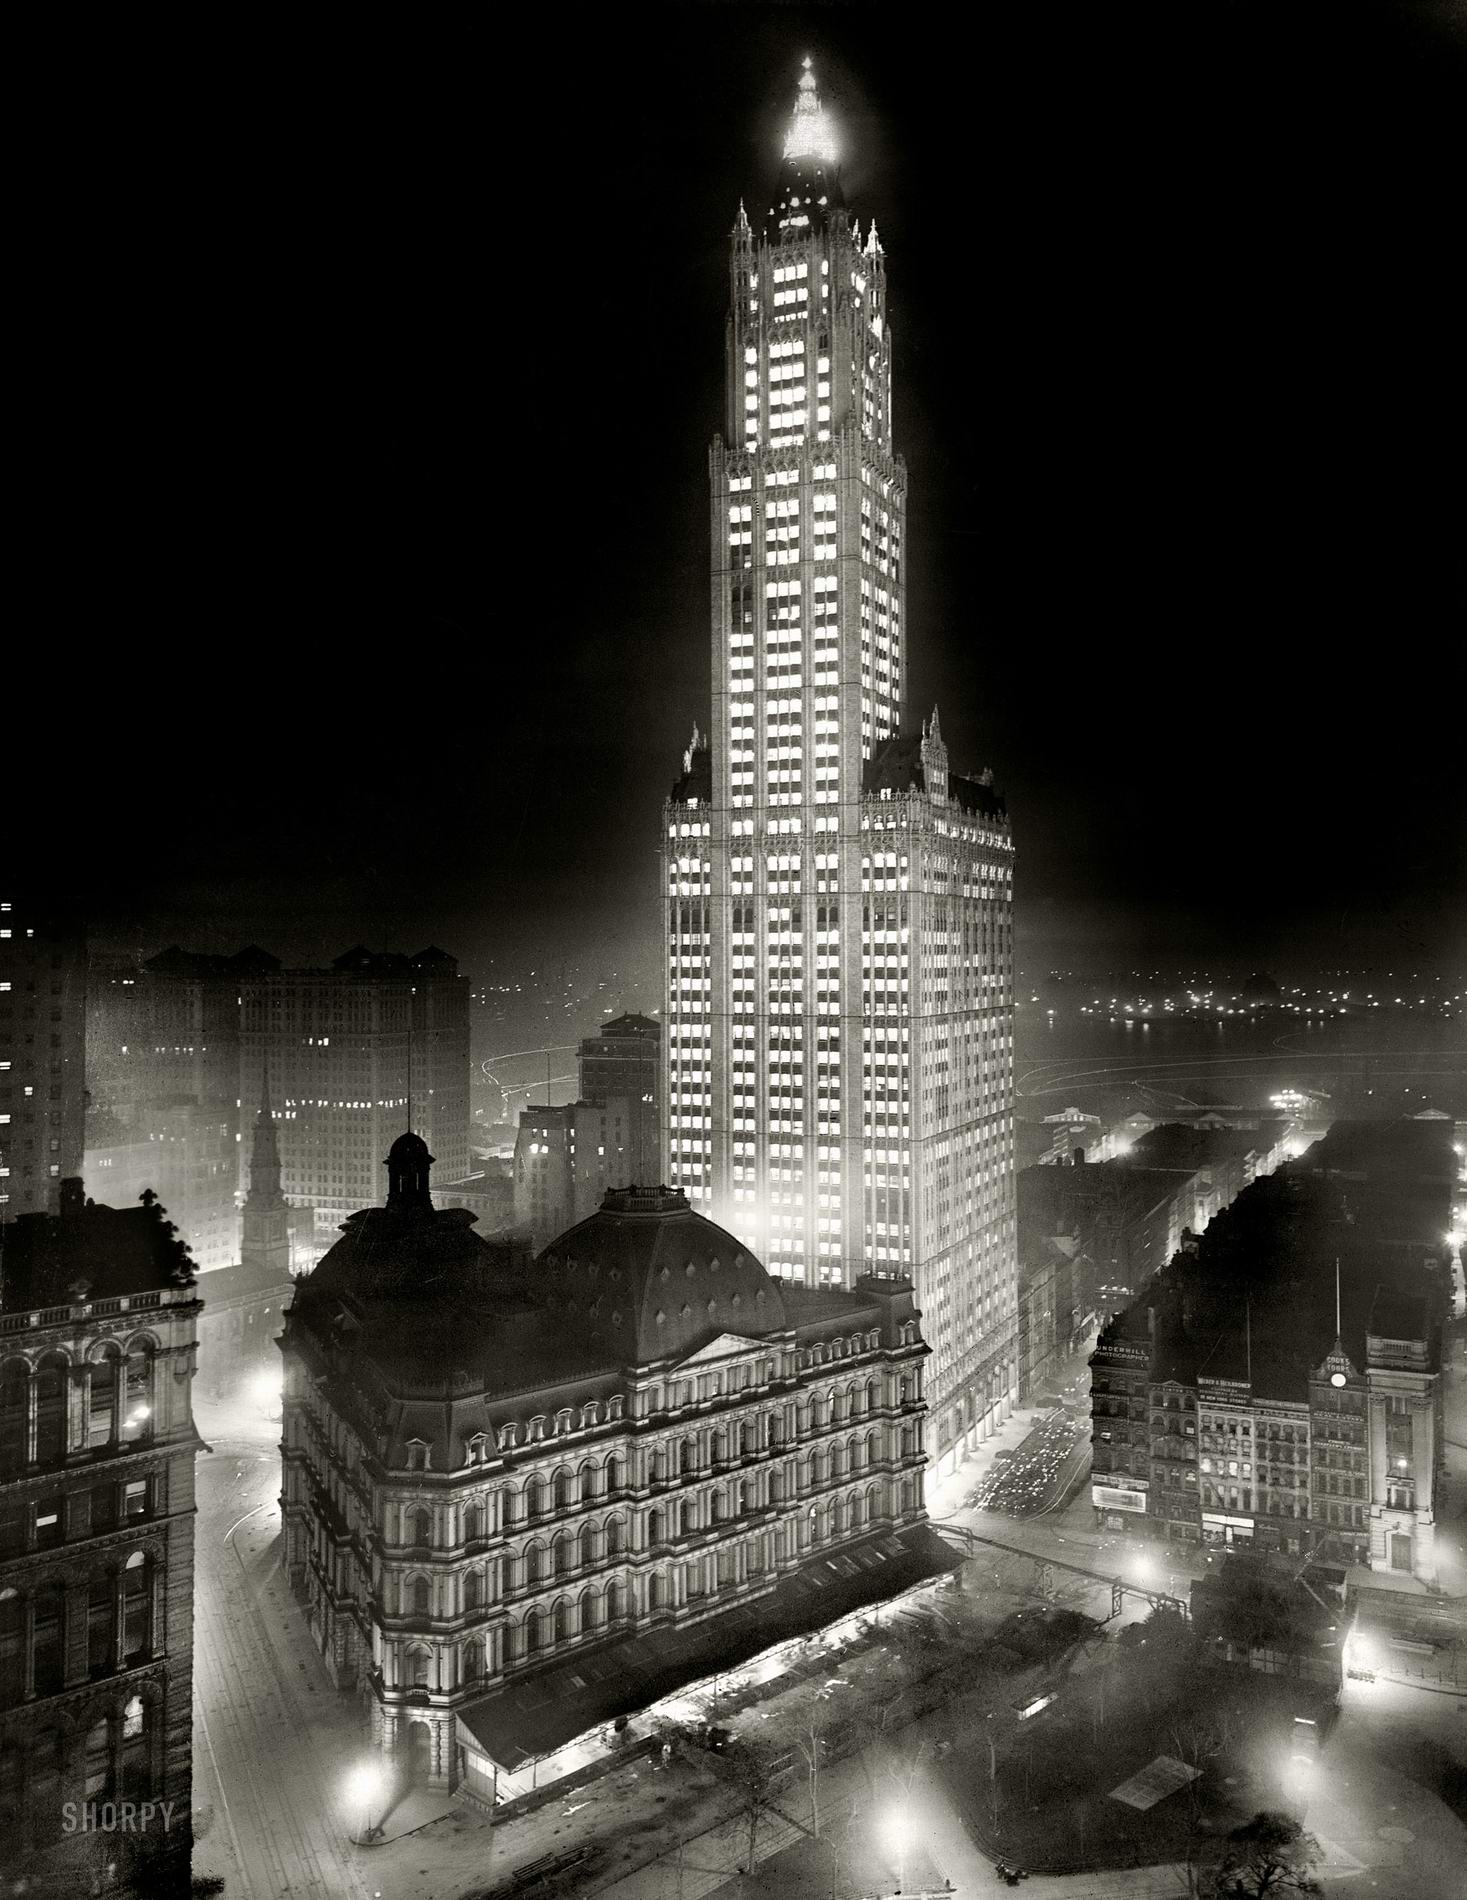 Ночной снимок Woolworth Building - 1913 год. Эрцгерцог Фердинанд еще жив (как и многие другие!), до Великой Войны остается еще год.jpg